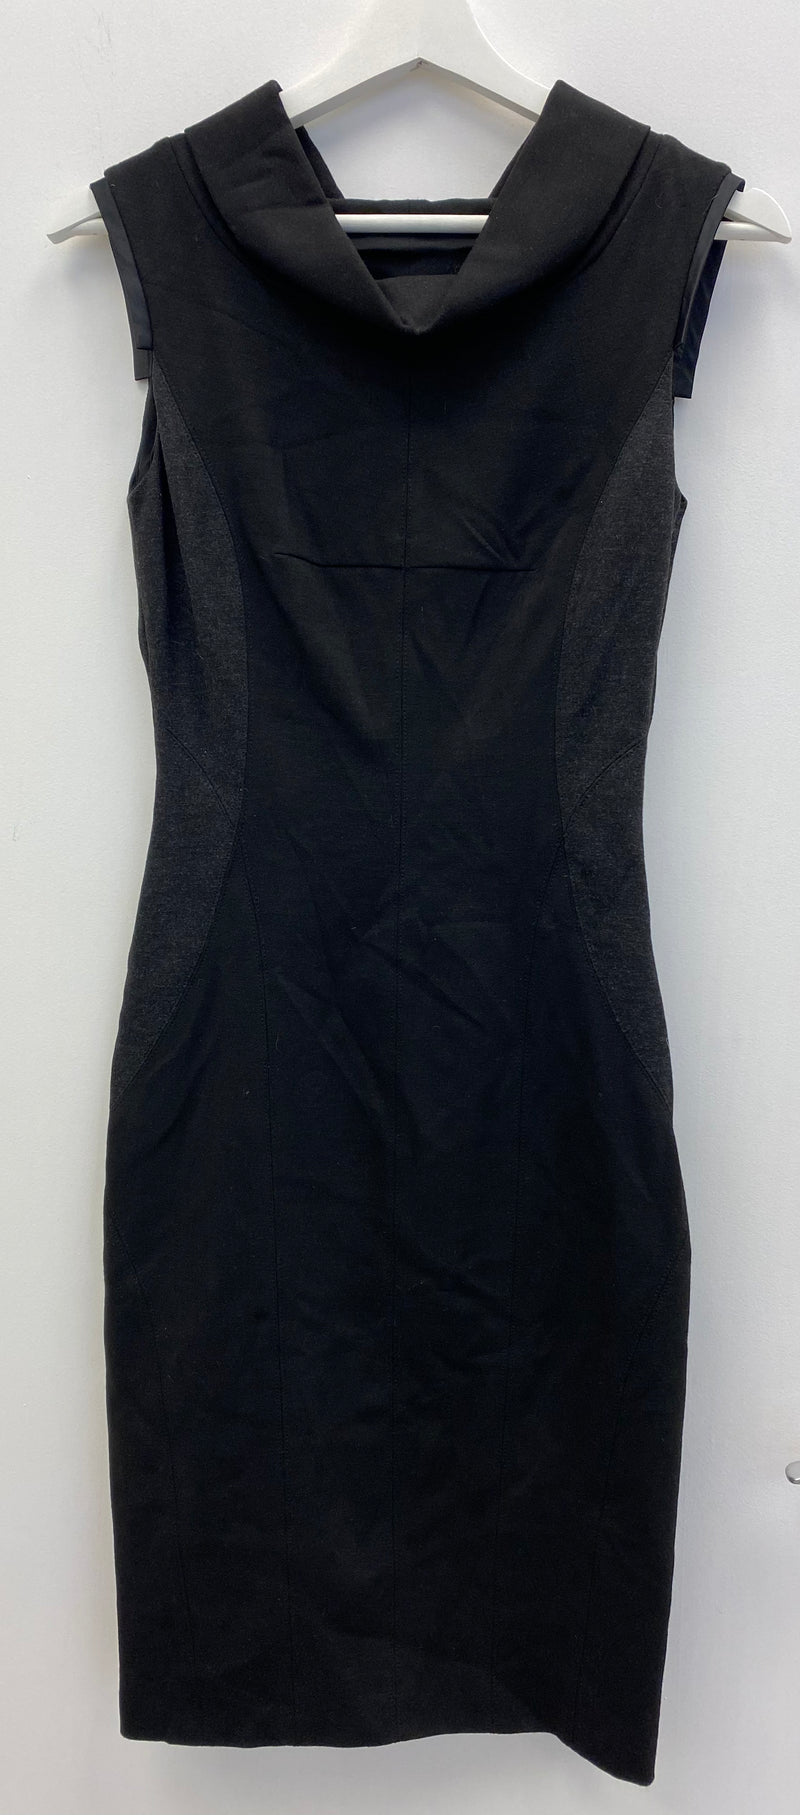 Black Sleeveless Cowl Neck Sheath Dress UK 6